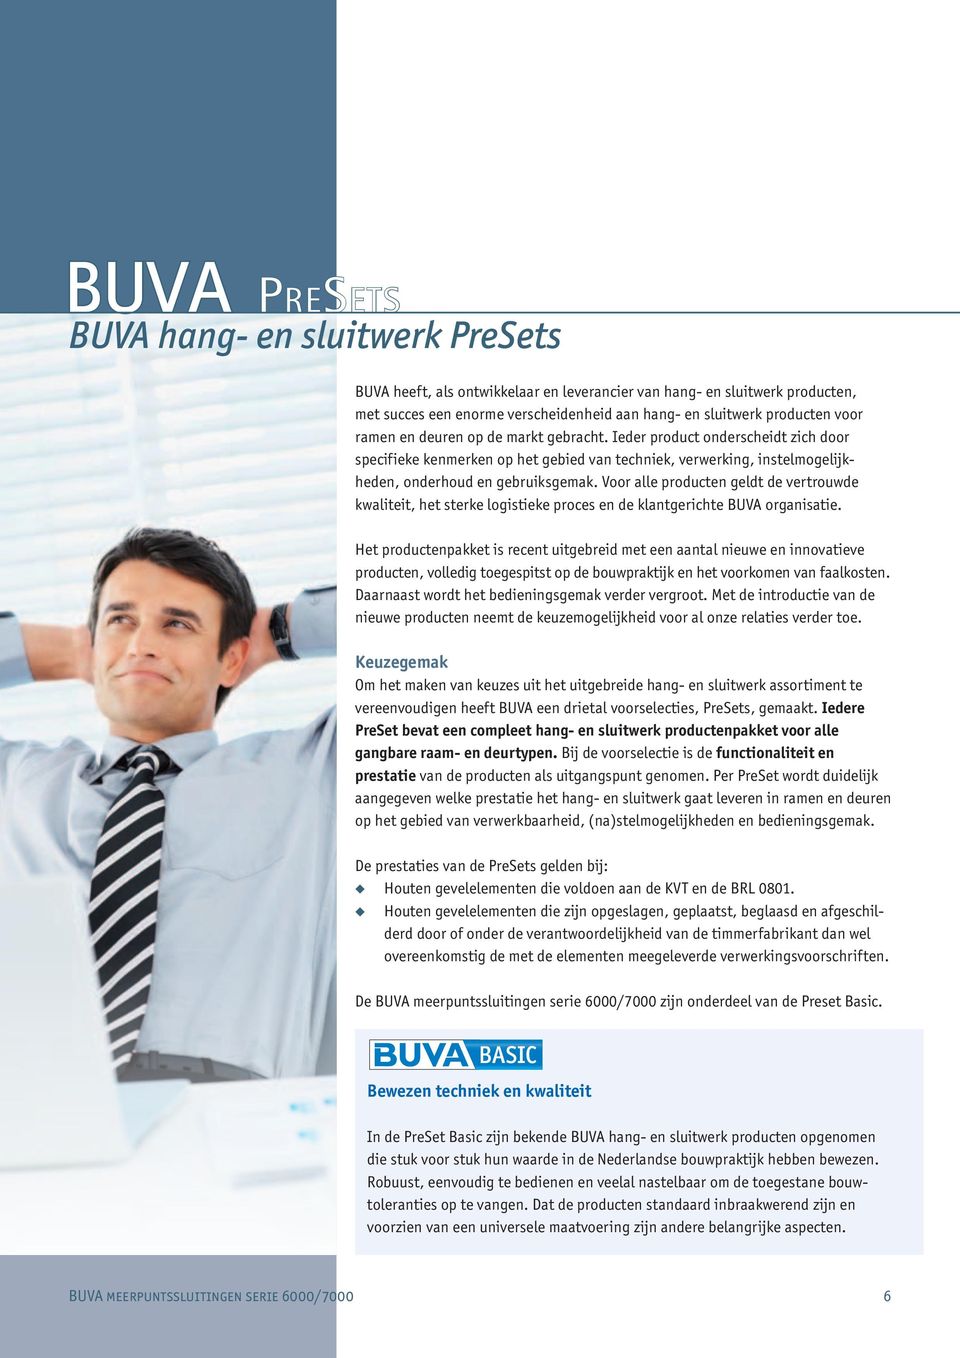 Voor alle producten geldt de vertrouwde kwaliteit, het sterke logistieke proces en de klantgerichte BUVA organisatie.